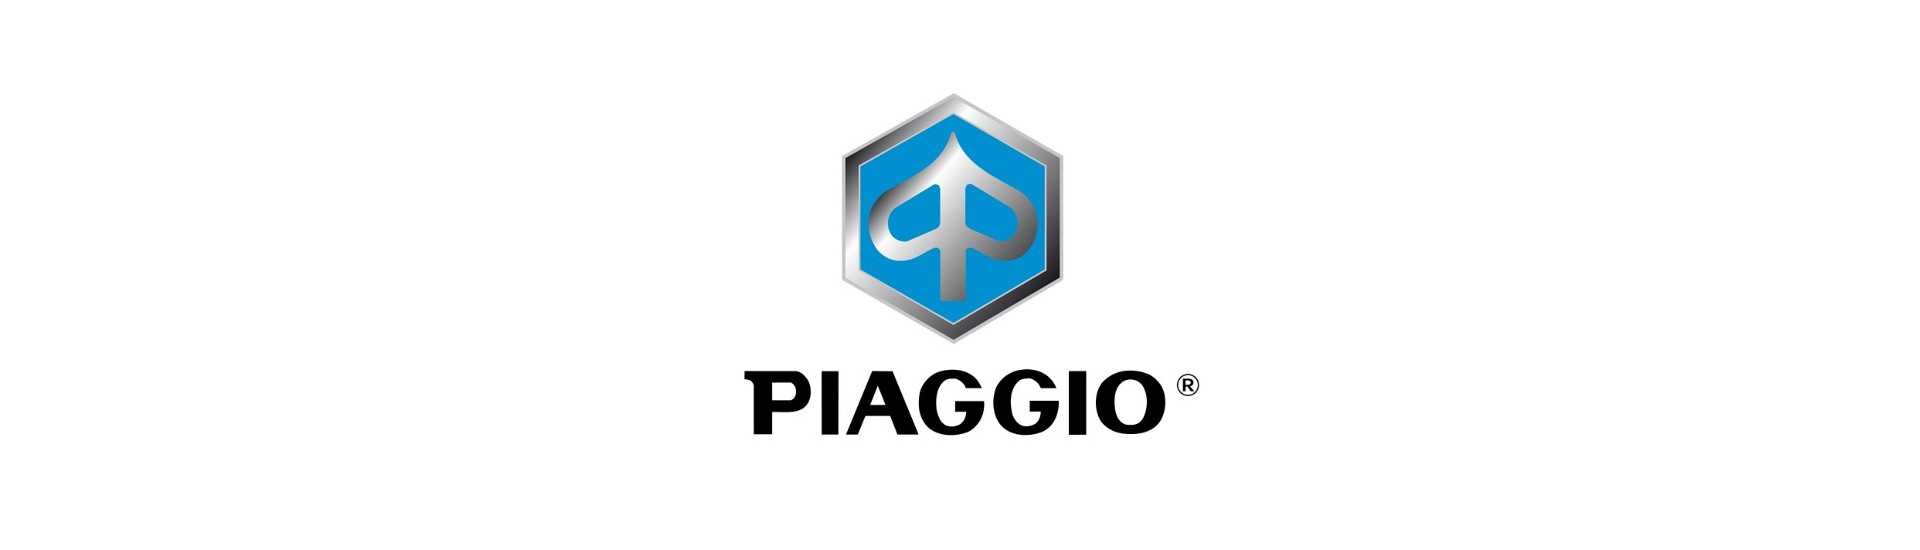 Rueda de dirección al mejor precio para coche sin permiso Piaggio